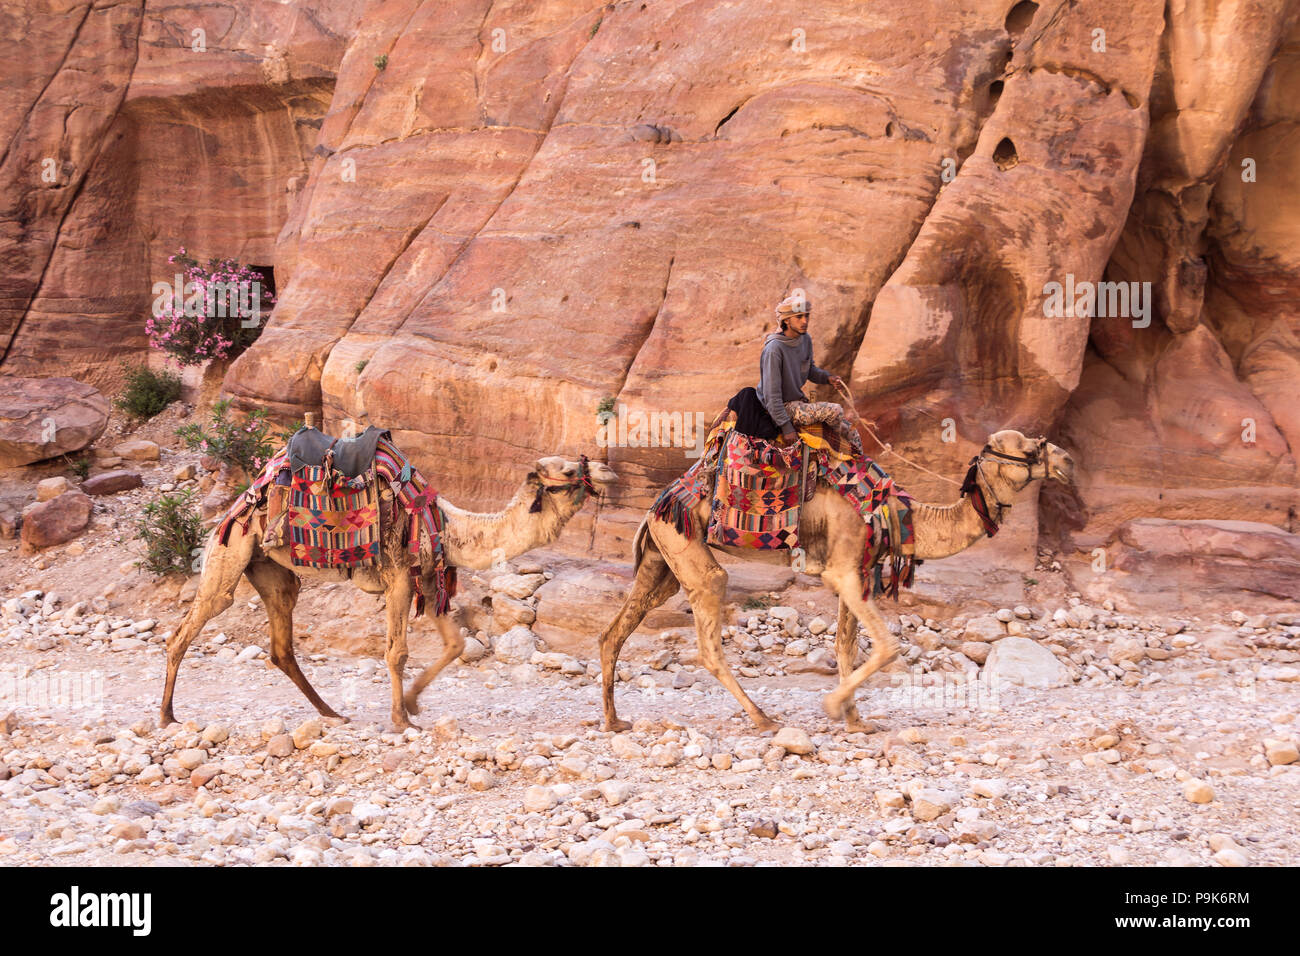 PETRA, JORDANIE - 28 avril 2016 : Jeune homme Bédouin monté sur son chameau à Petra en Jordanie Banque D'Images